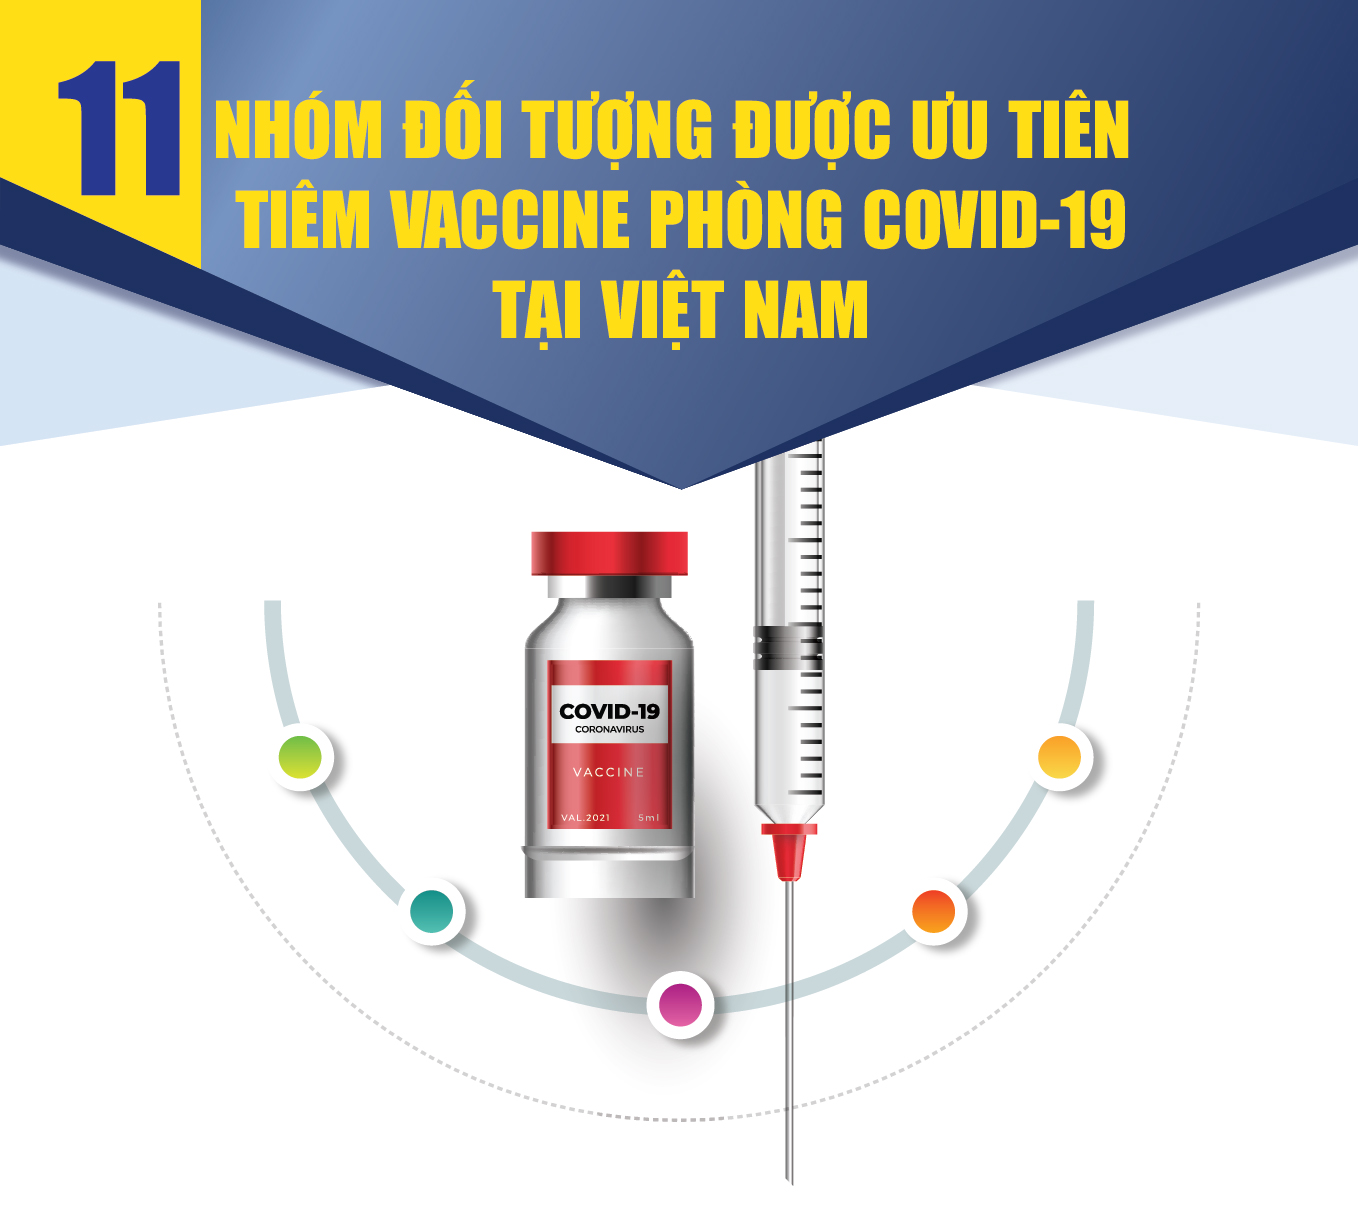 [Infographic] - 11 nhóm đối tượng được ưu tiên tiêm vaccine phòng COVID-19 đầu tiên ở Việt Nam